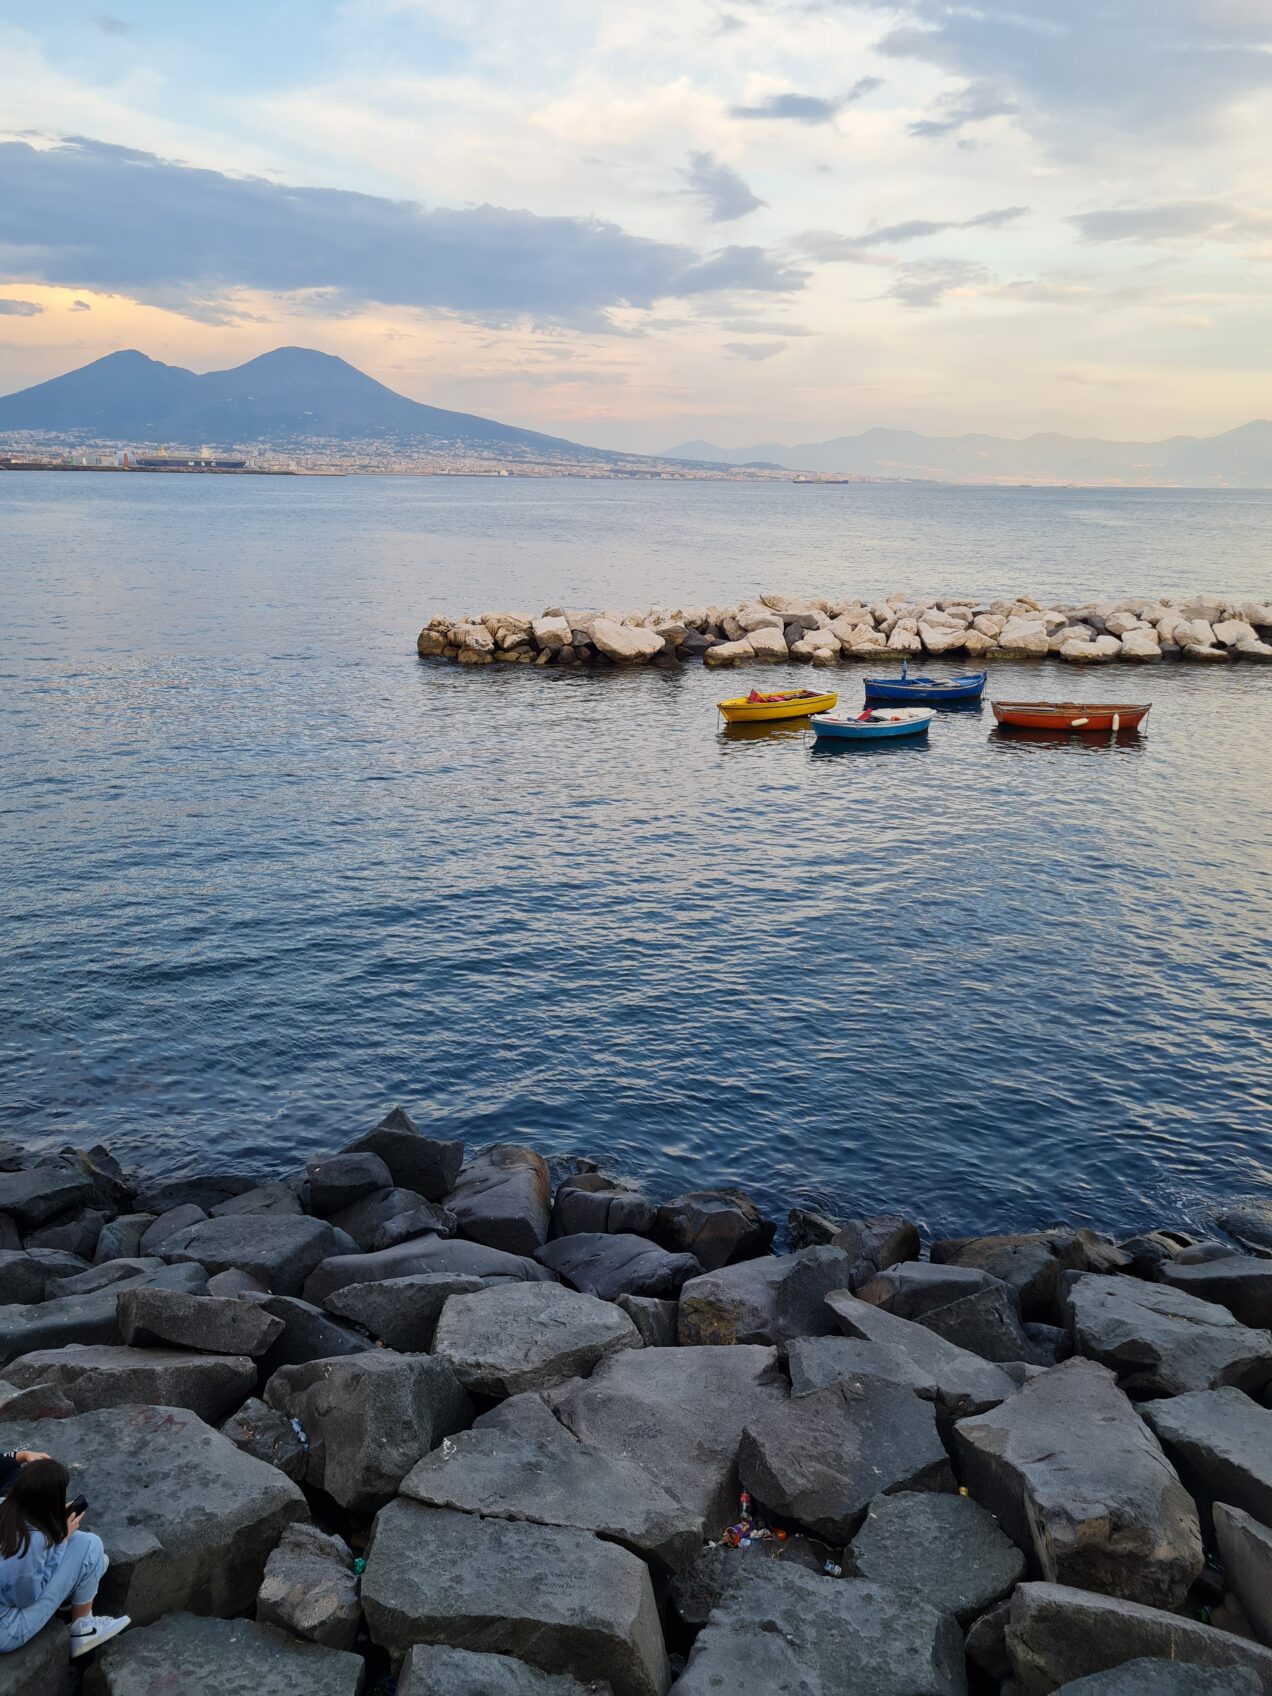 Naples Views